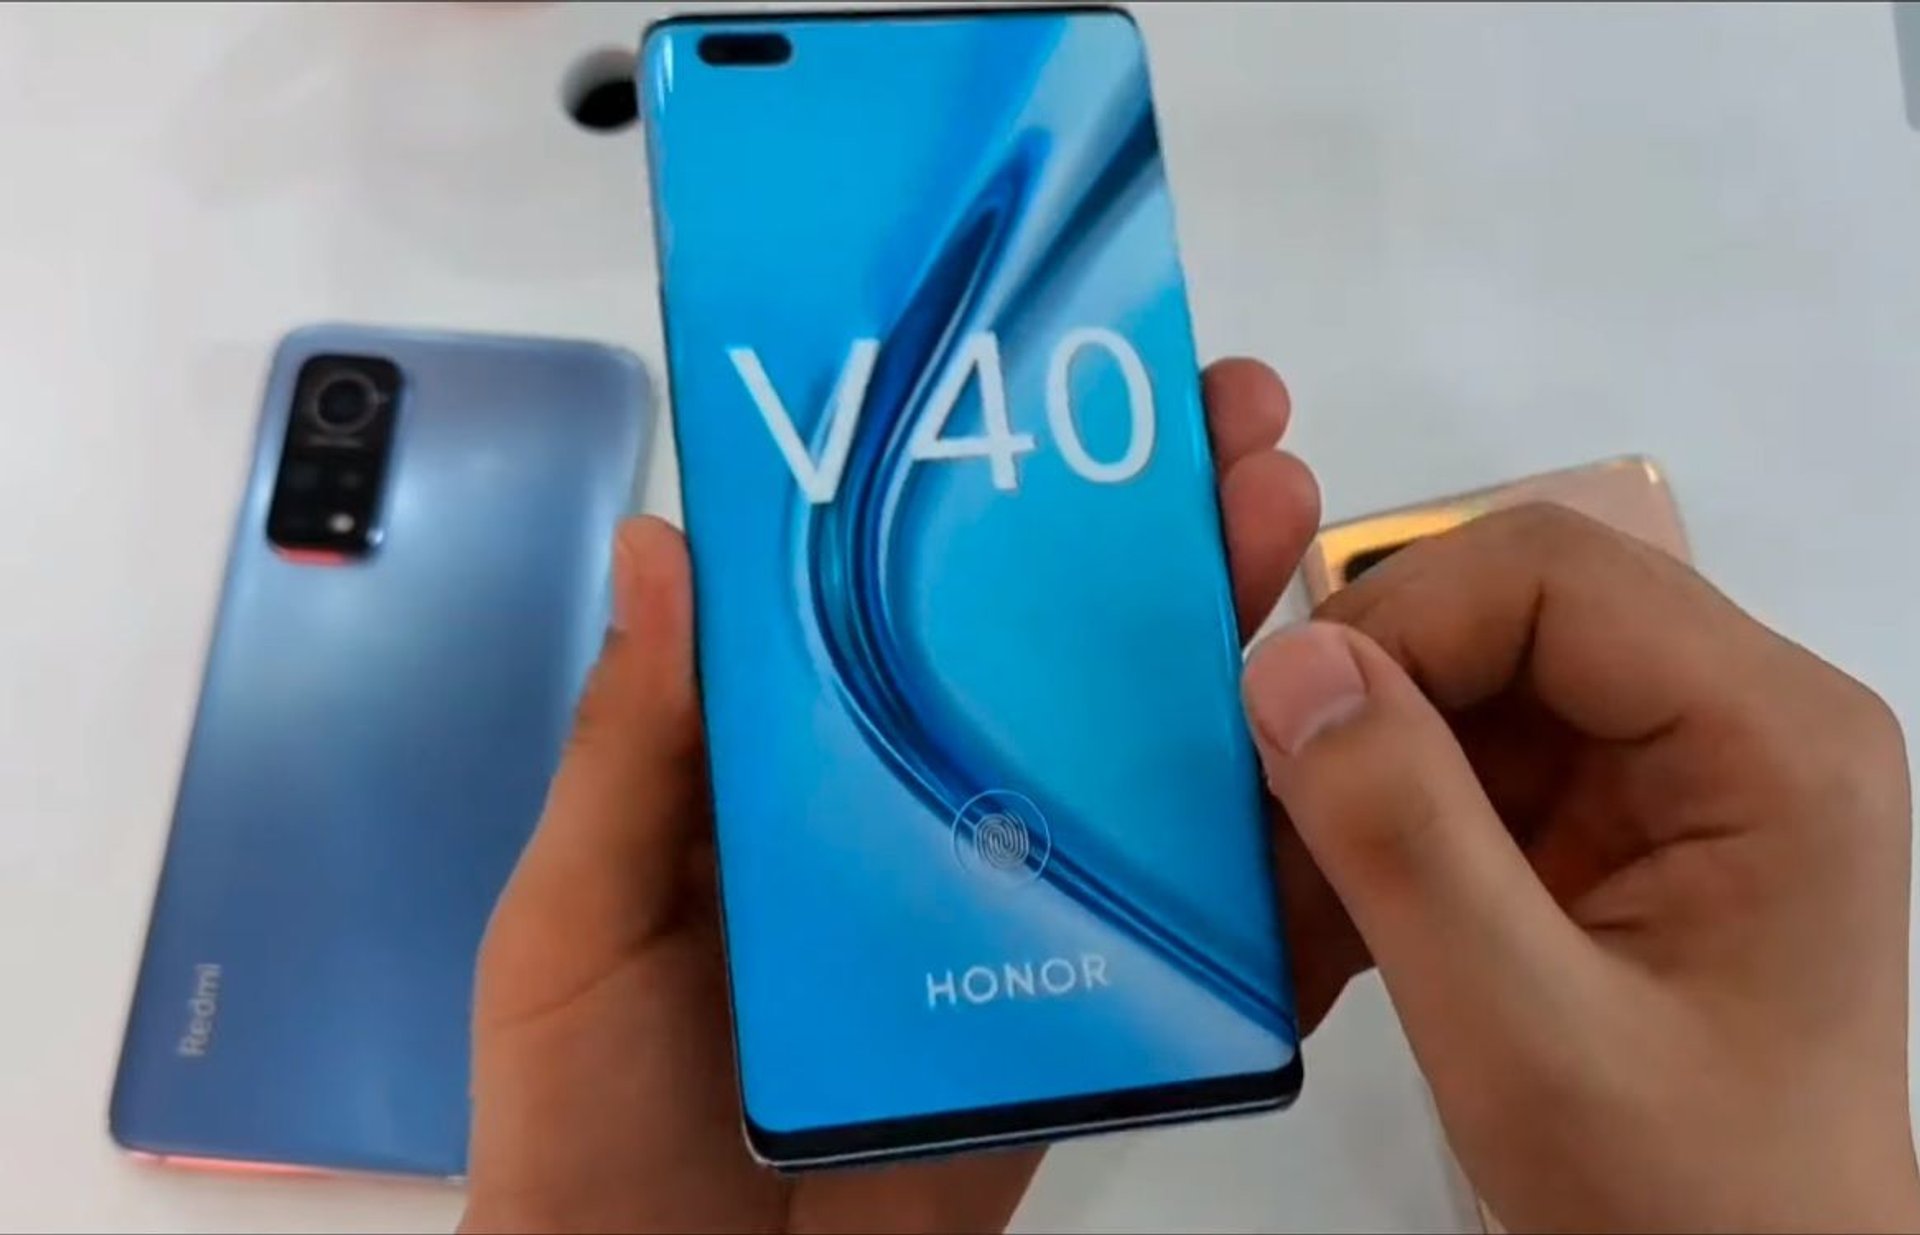 Trzymany w dłoniach smartfon Honor V40